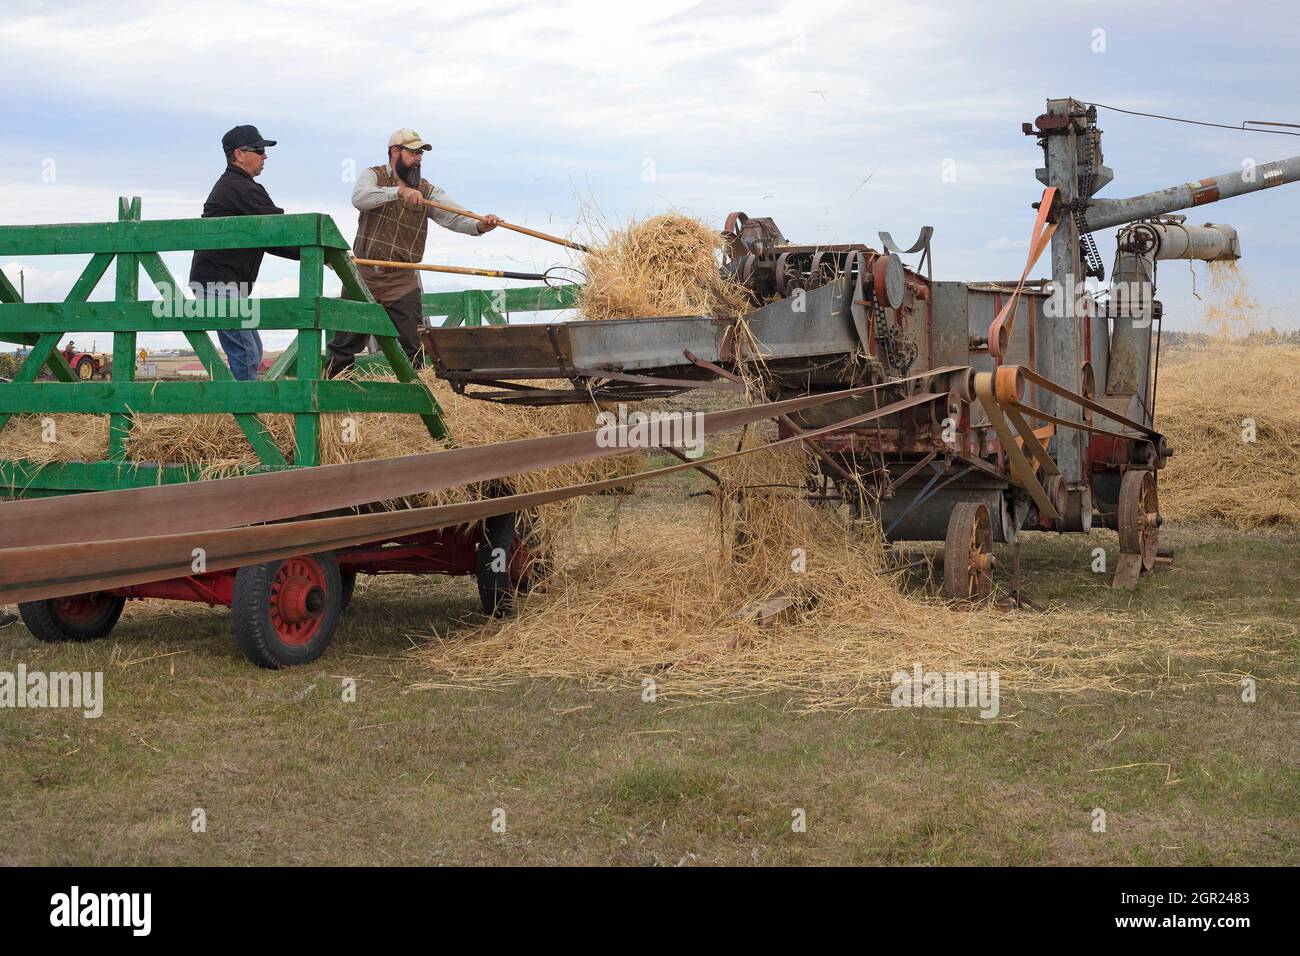 Des hommes déchargeant l'orge récoltée du wagon vers la machine de battage antique McCormick - Deering pour séparer le grain de la paille, Alberta, Canada Banque D'Images